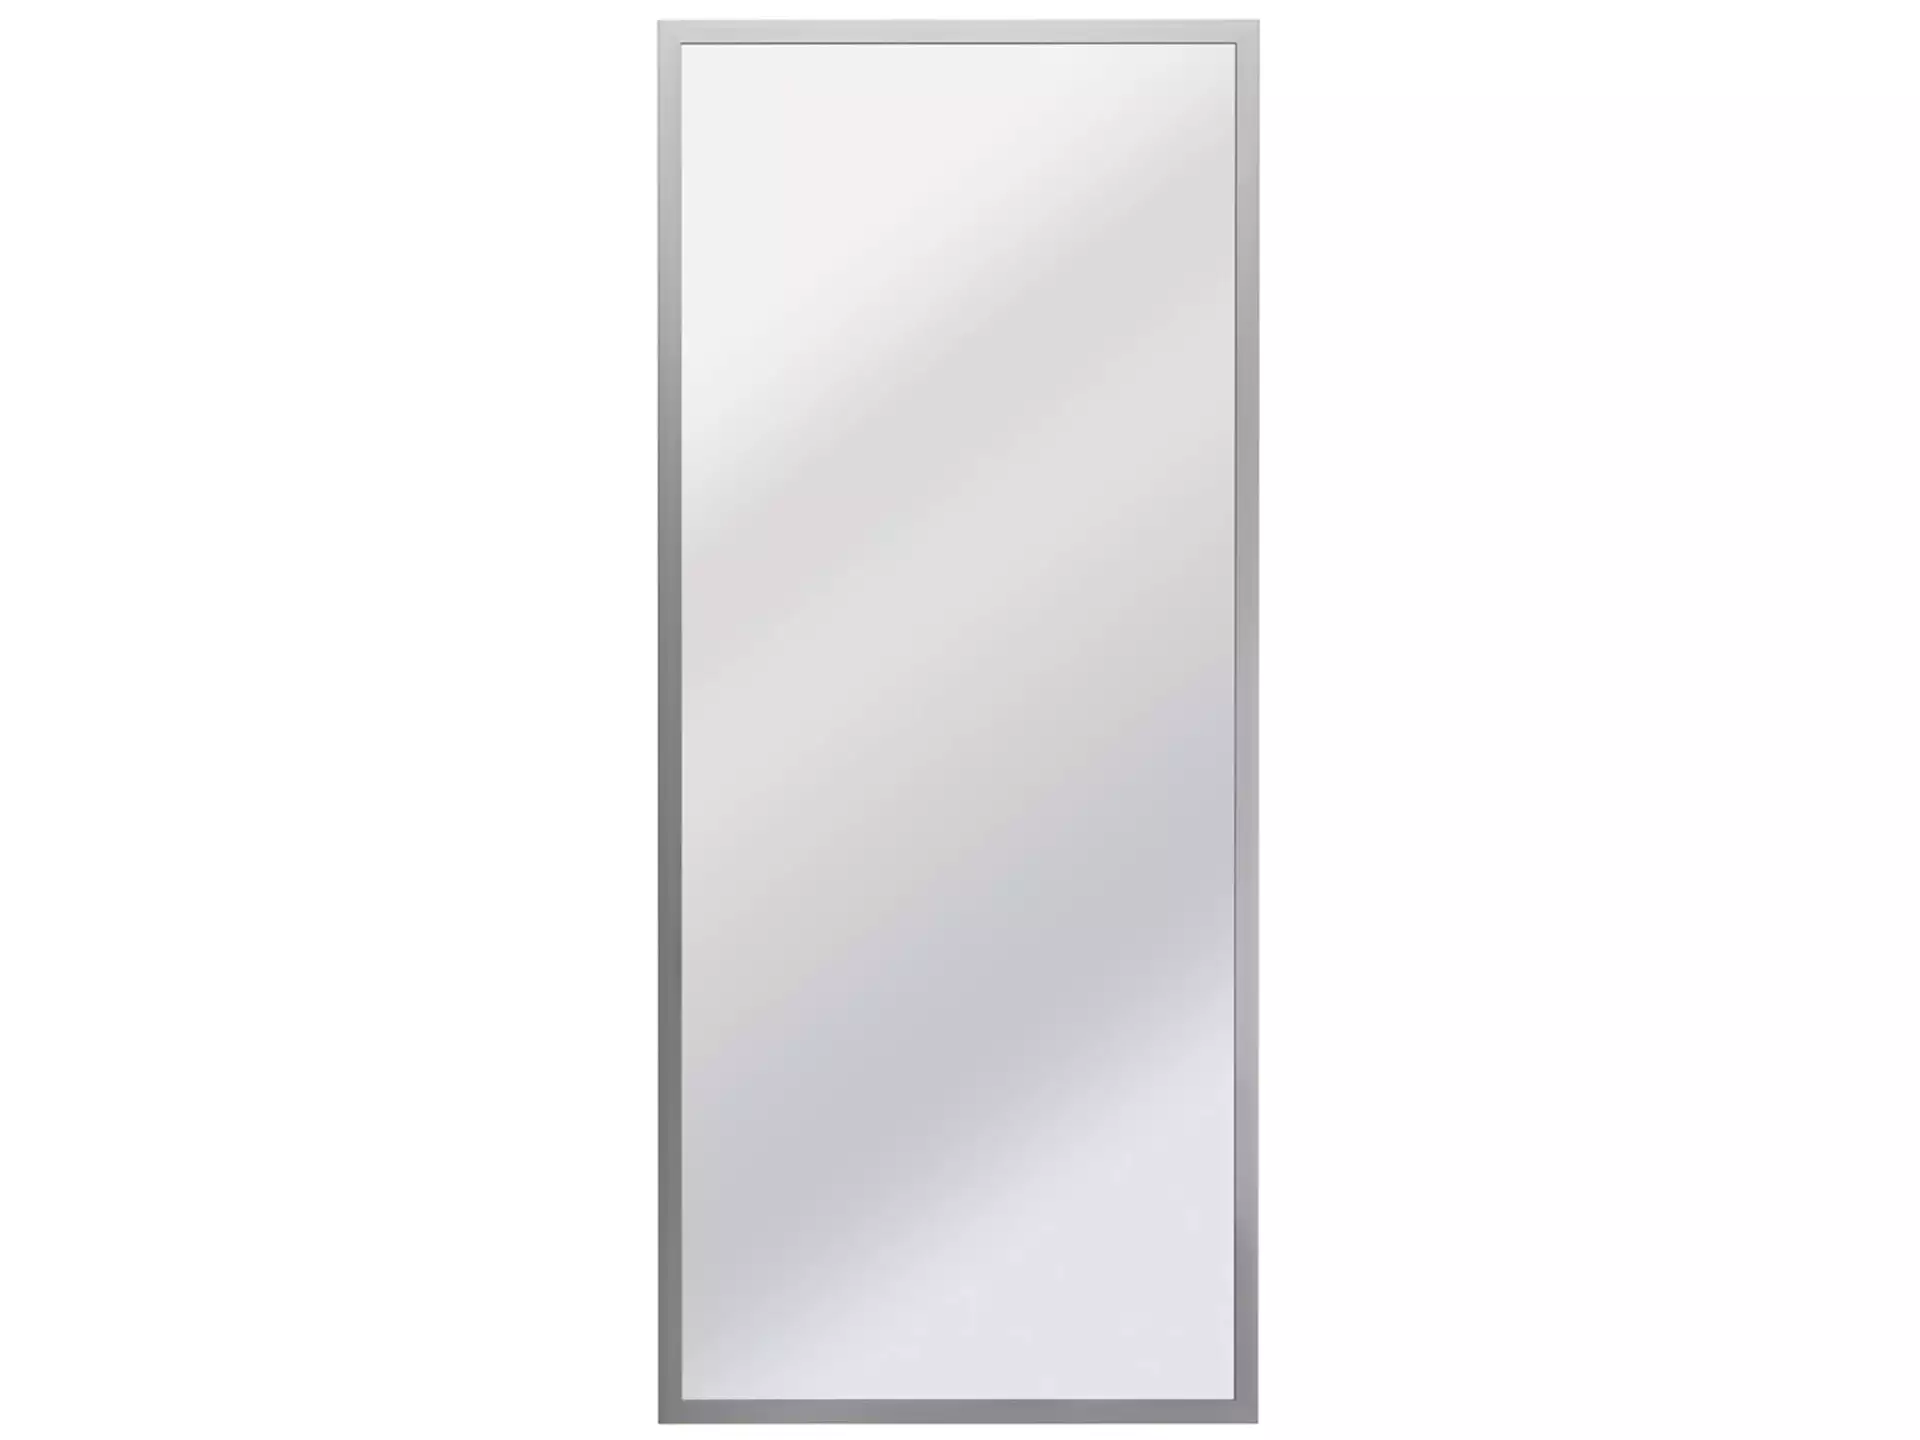 Spiegel Silber Gerahmt 60 x 150 cm image LAND